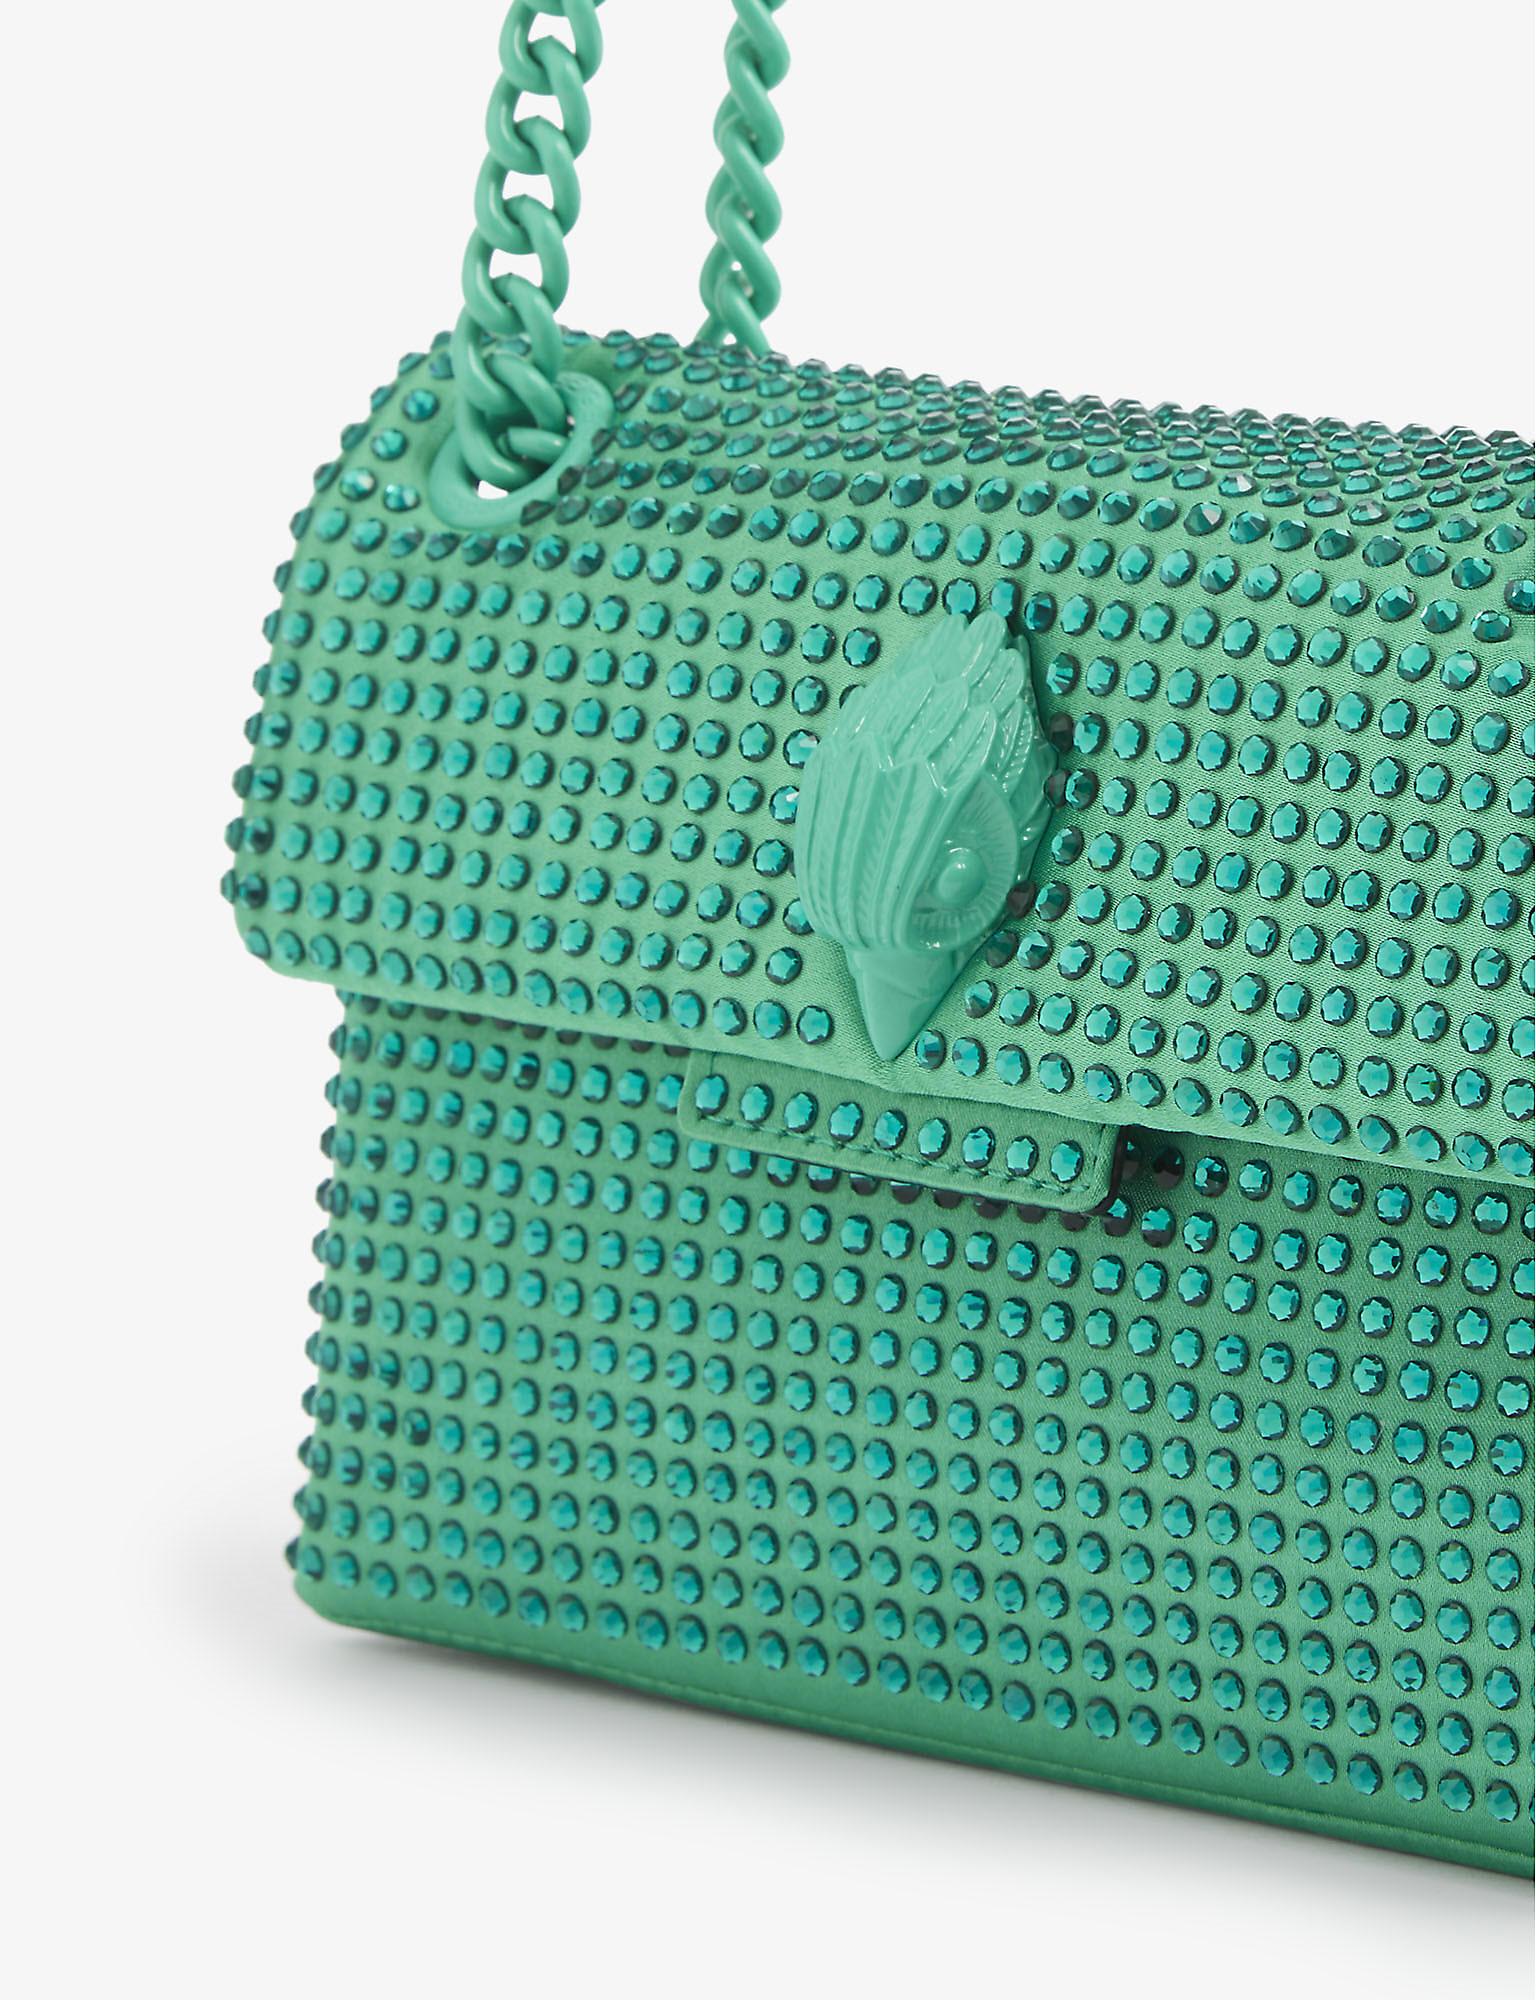 Kurt Geiger Kensington Mini Crystal-embellished Shoulder Bag in Green